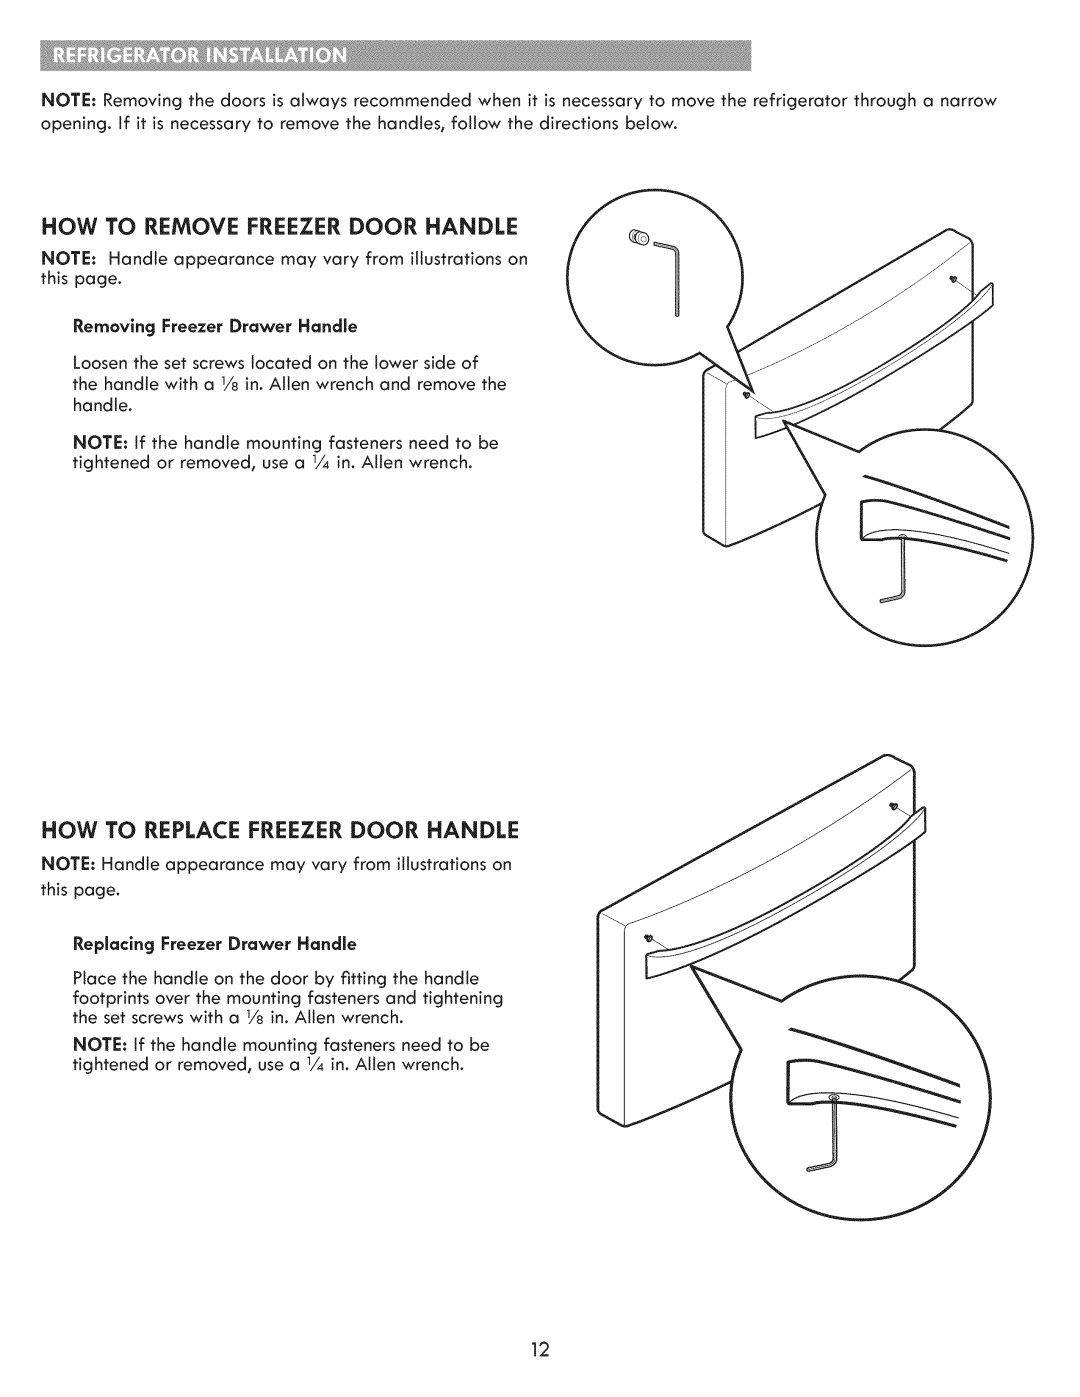 Kenmore 795.7205 How To Remove Freezer Door Handle, How To Replace Freezer Door Handle, Removing Freezer Drawer Handle 